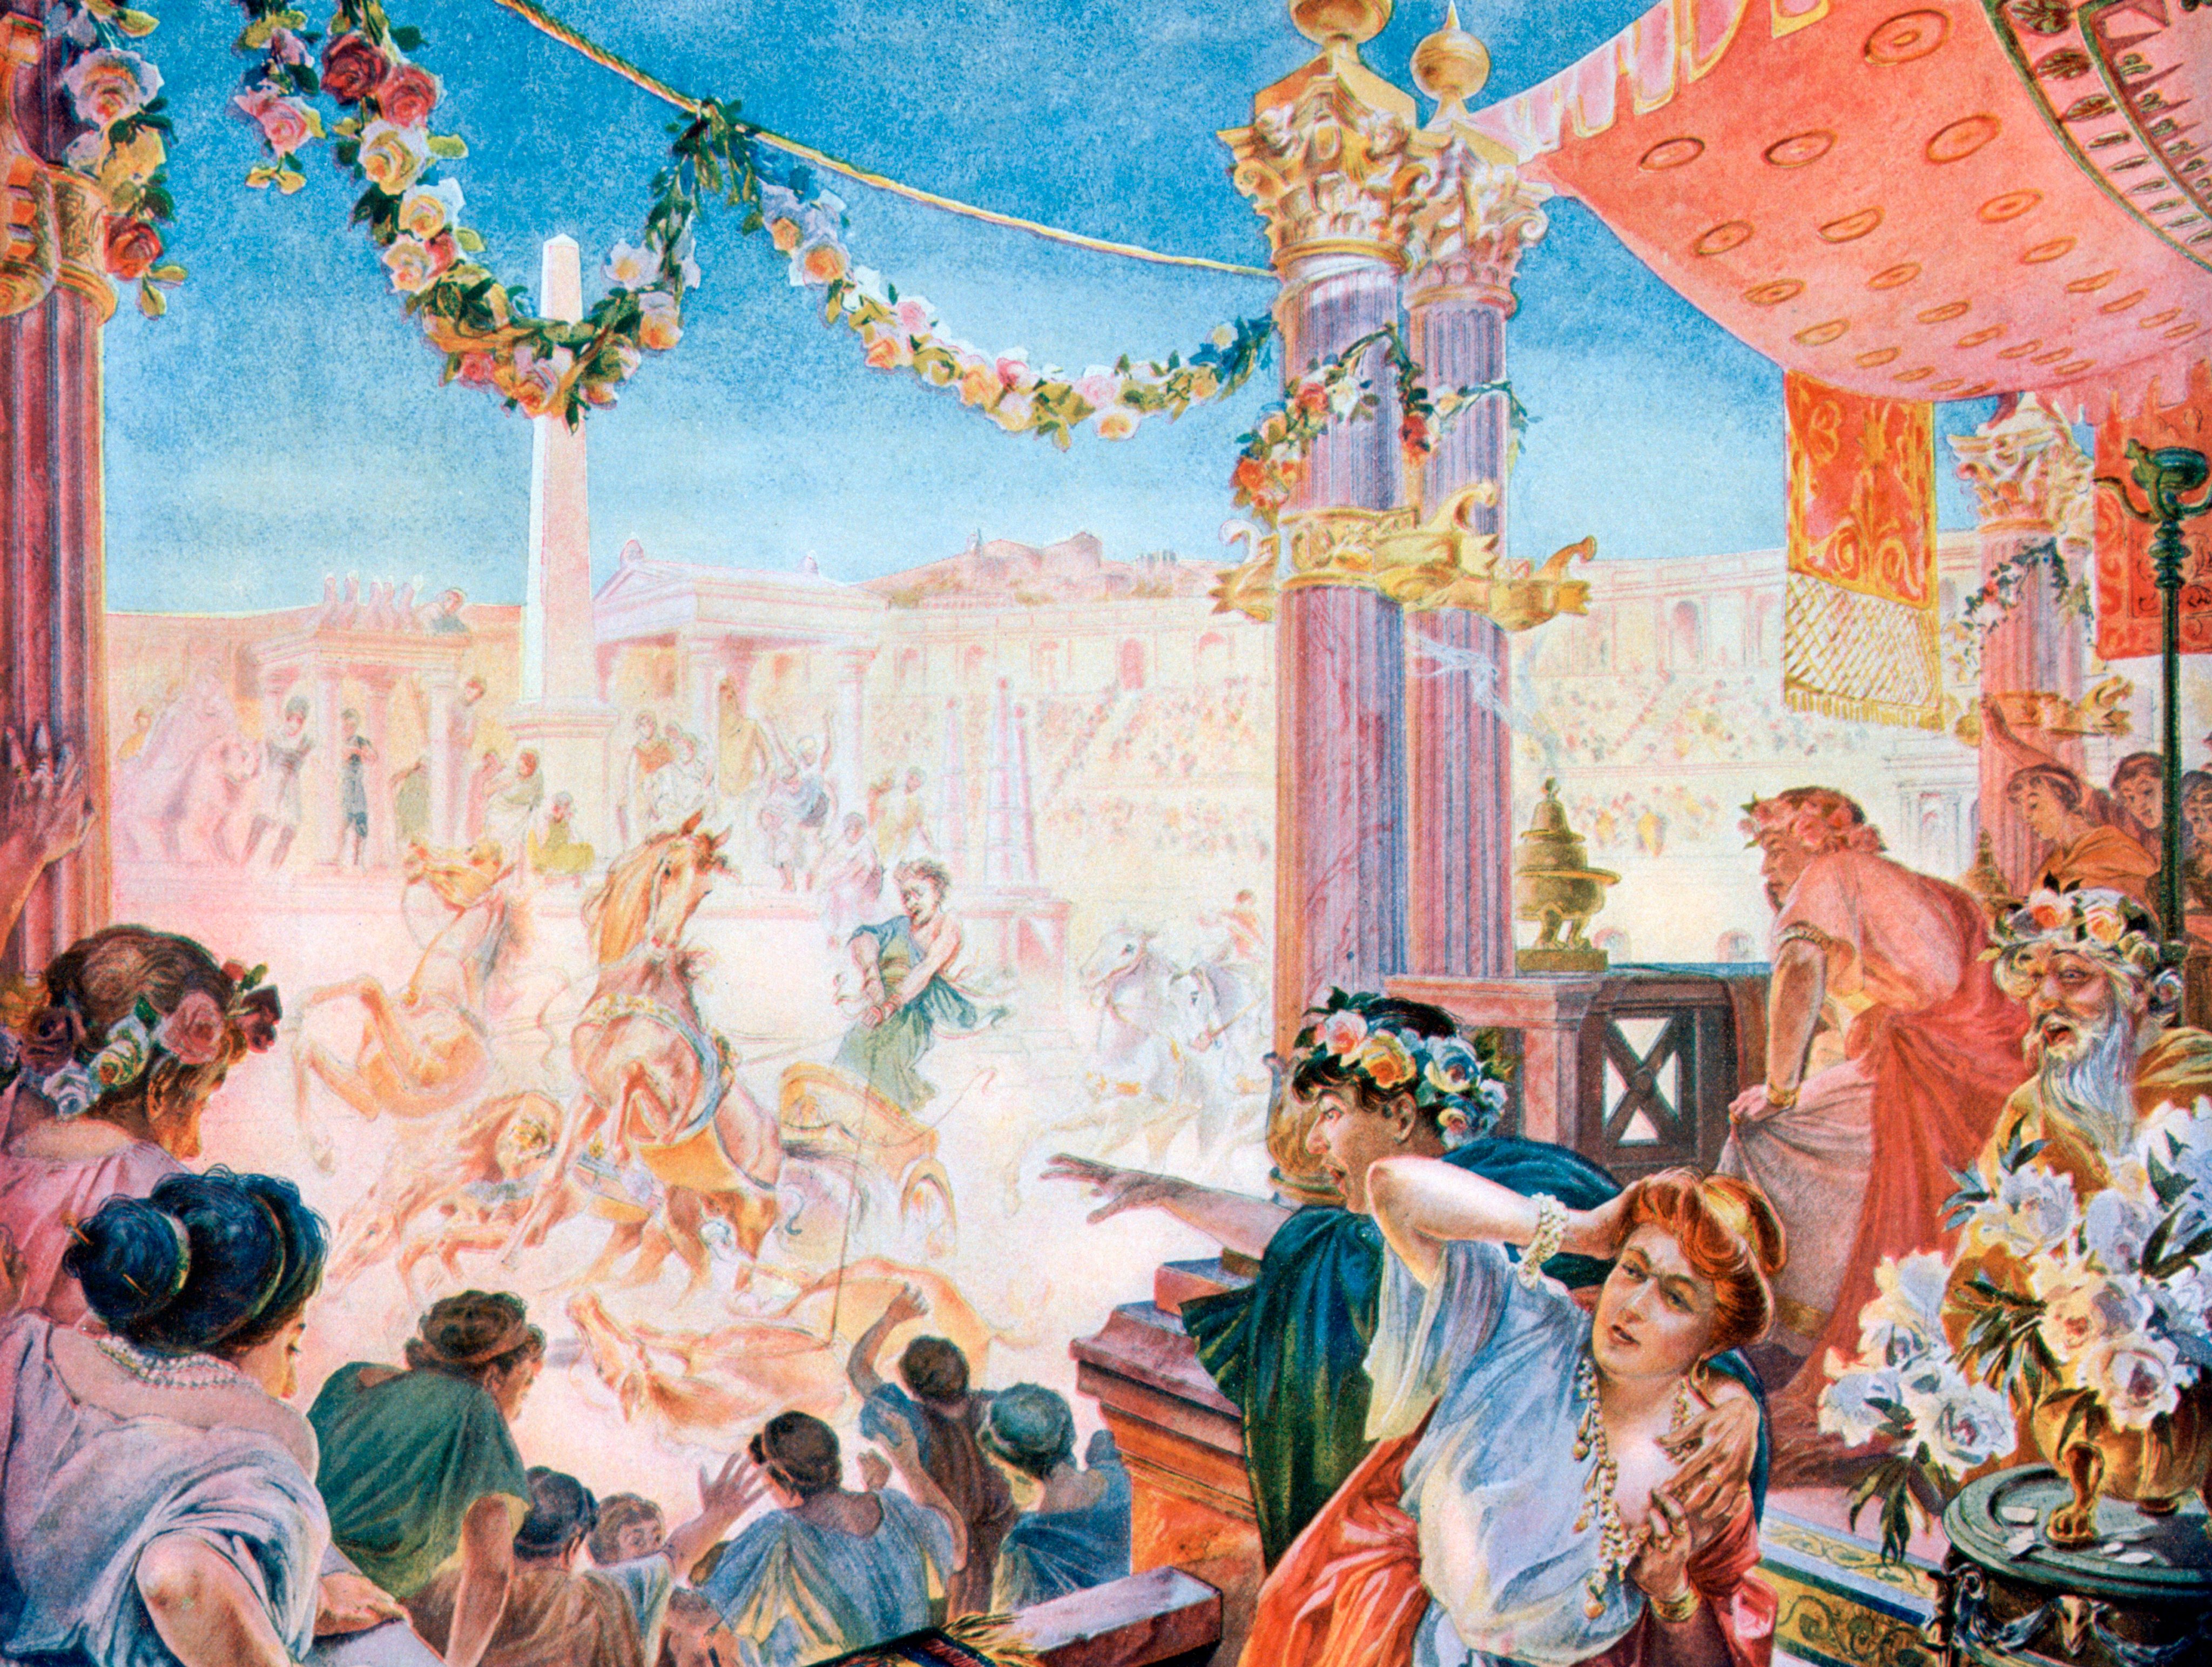 The Circus of Nero or the Circus of Caligula, Rome, (1901). Artist: Heilbronn